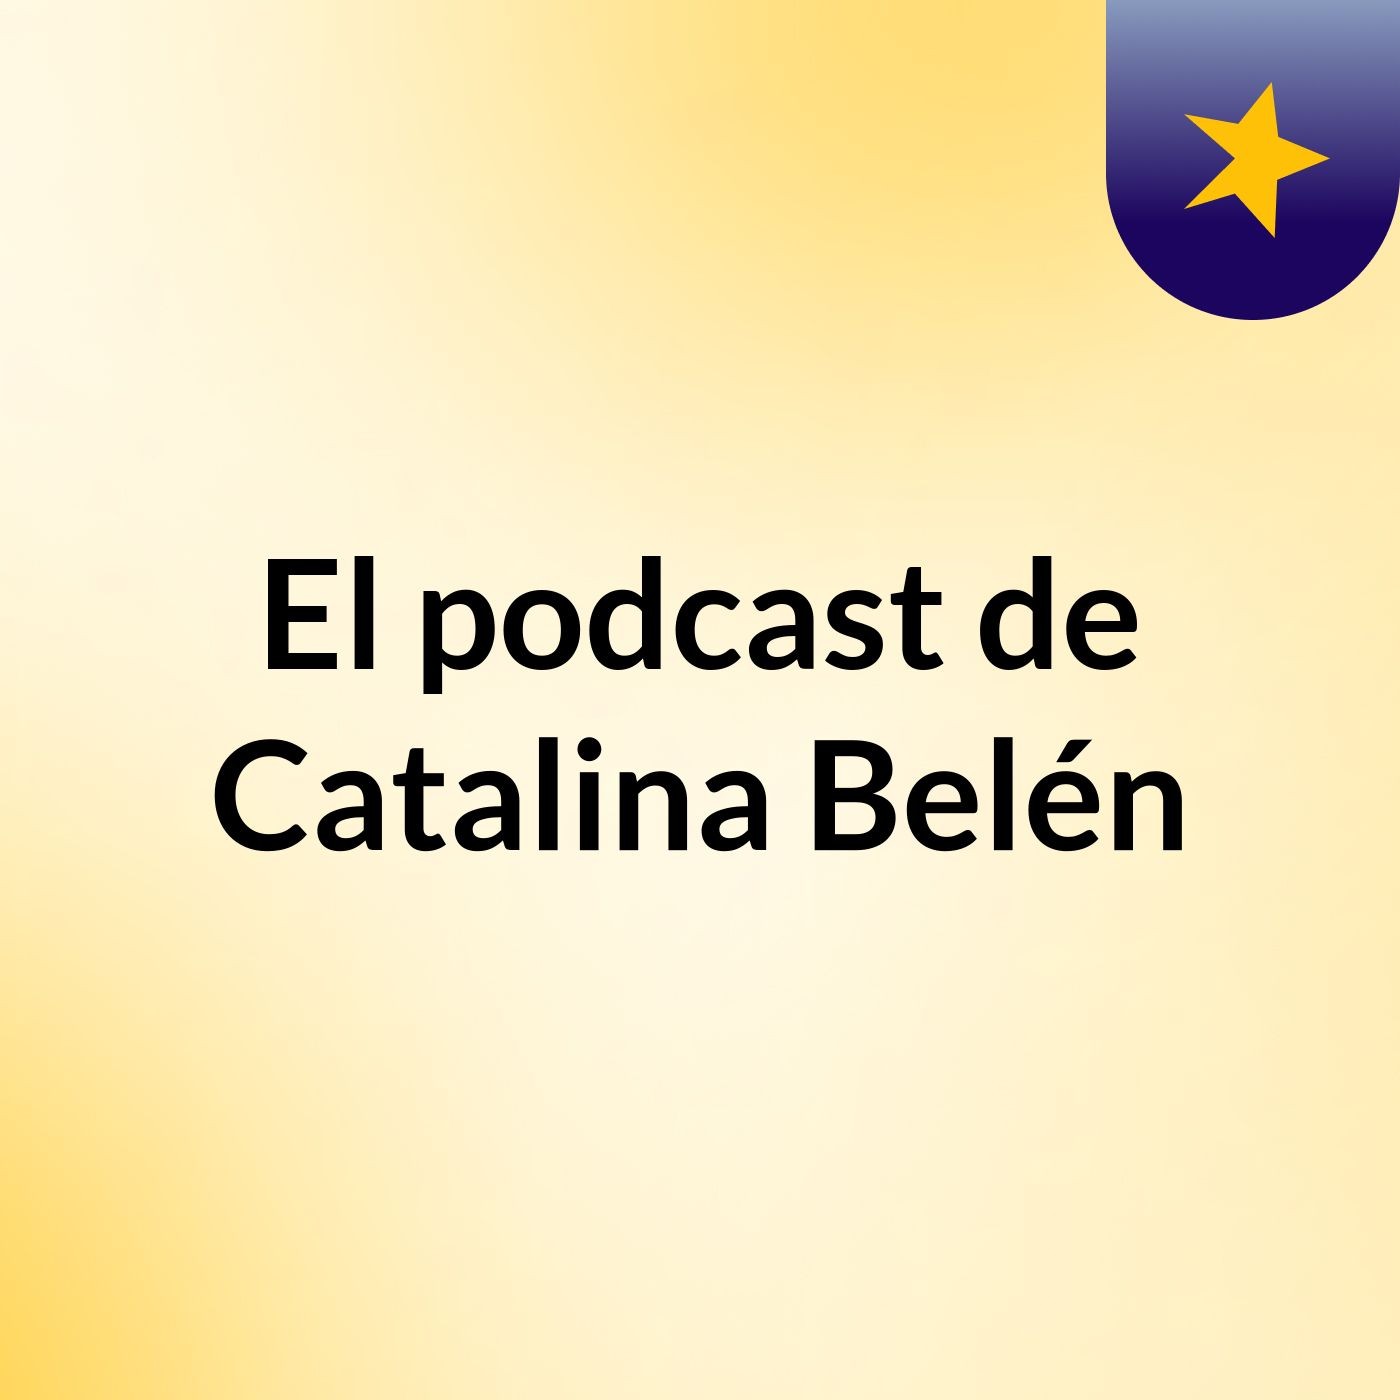 Episodio 6 - El podcast de Catalina Belén